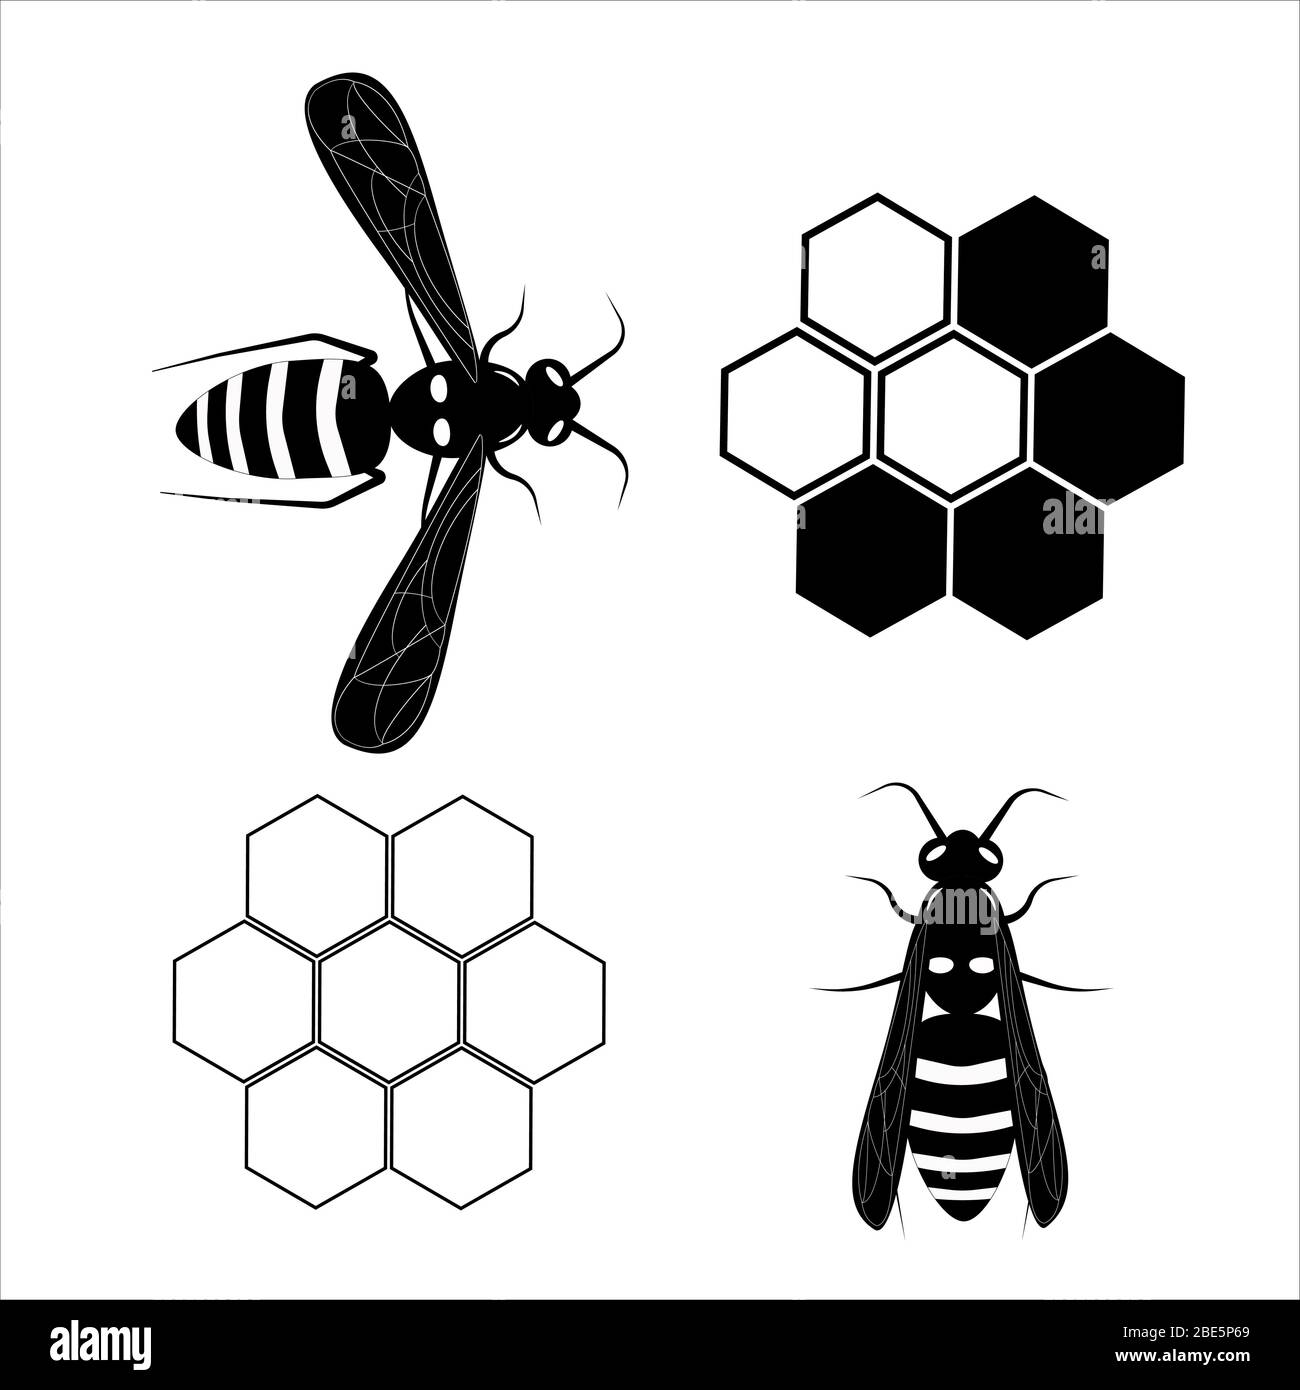 Wasp. Volanti Ape di miele. Illustrazione botanica. Animale di insetto, esotico. Vettore isolato su sfondo bianco. Nido d'ape. Illustrazione Vettoriale